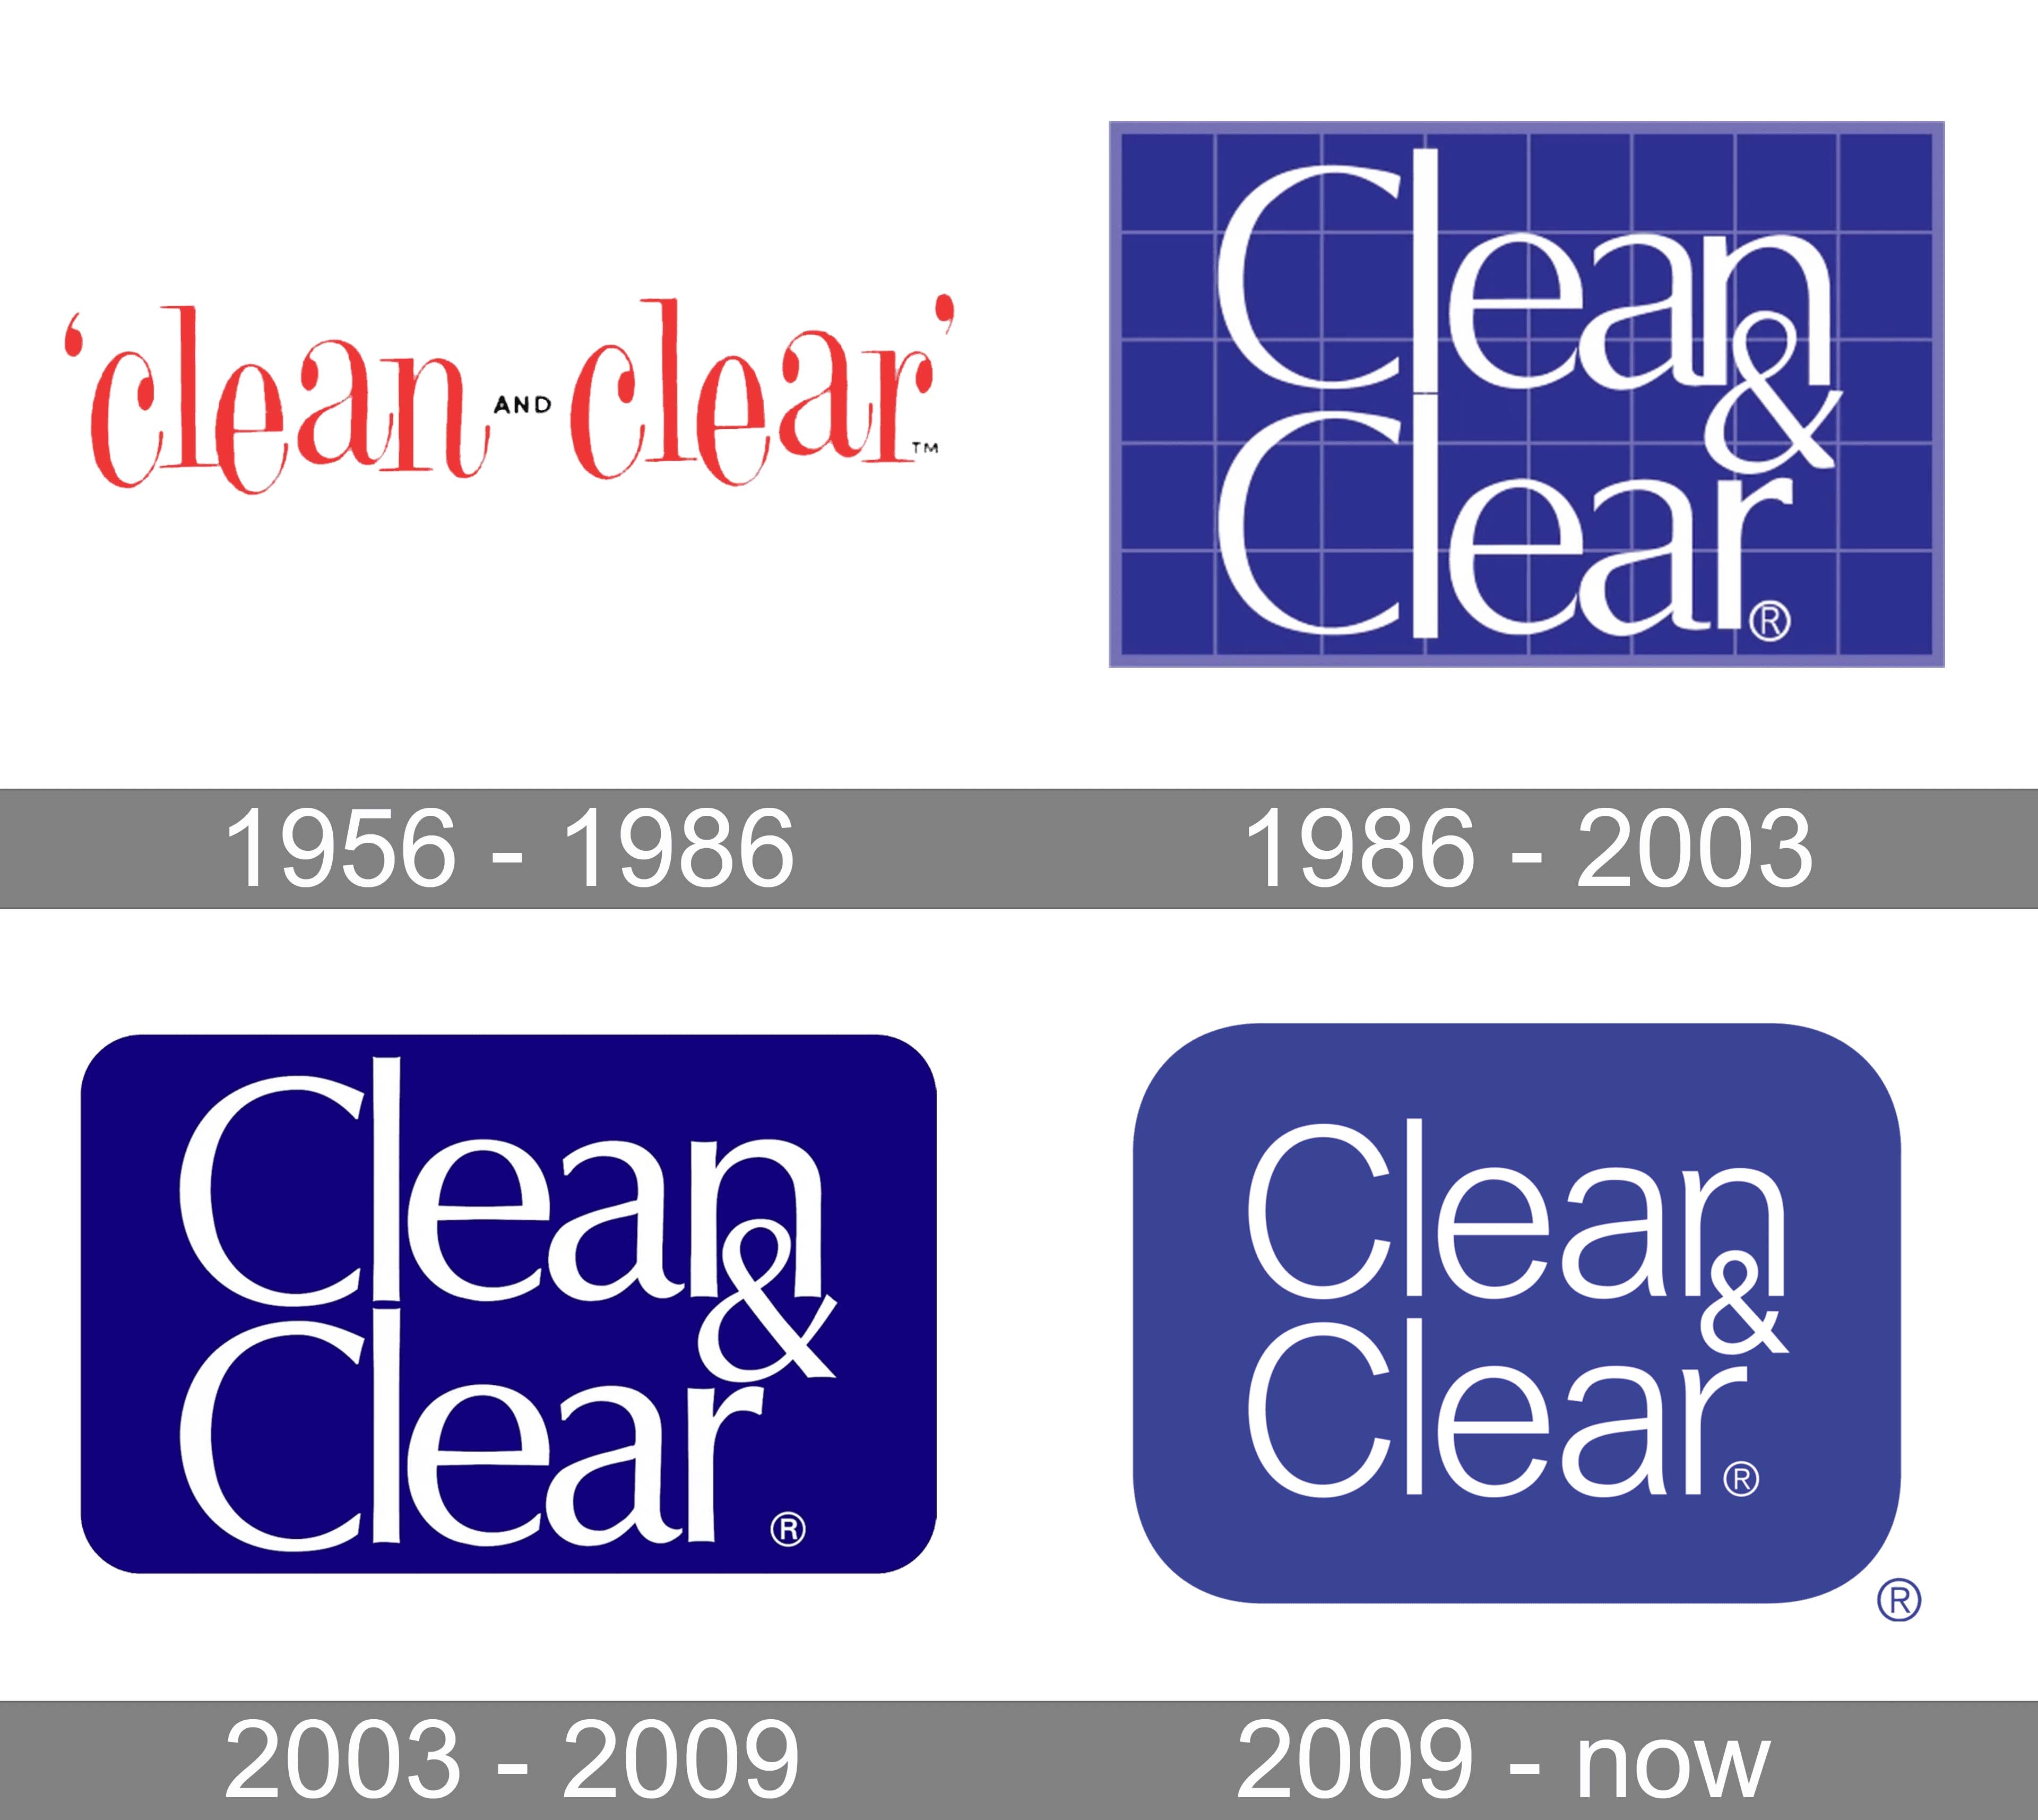 Mẫu thiết kế logo thương hiệu công ty CLEAN & CLEAR